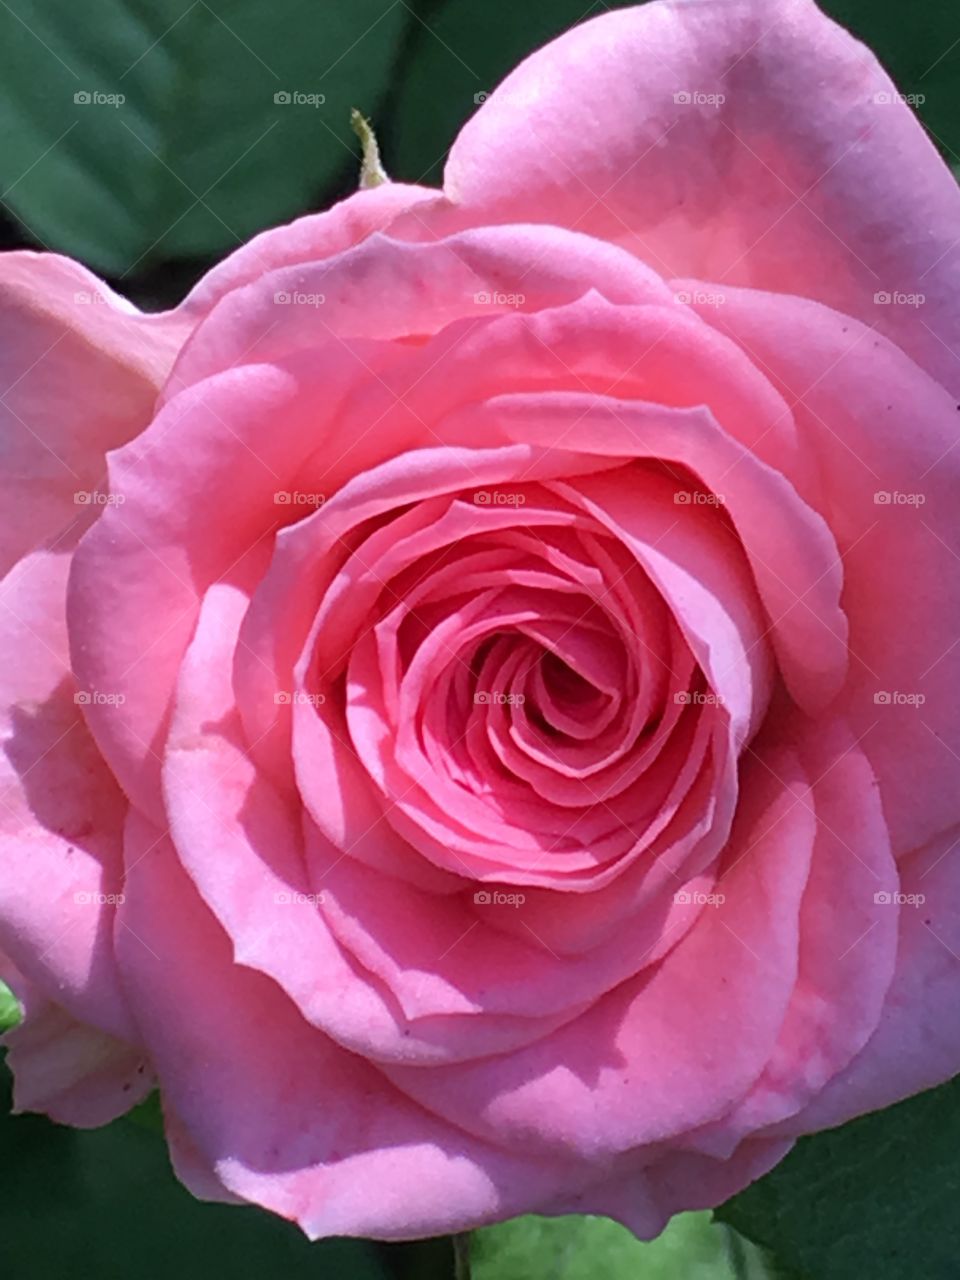 Rose Closeup 